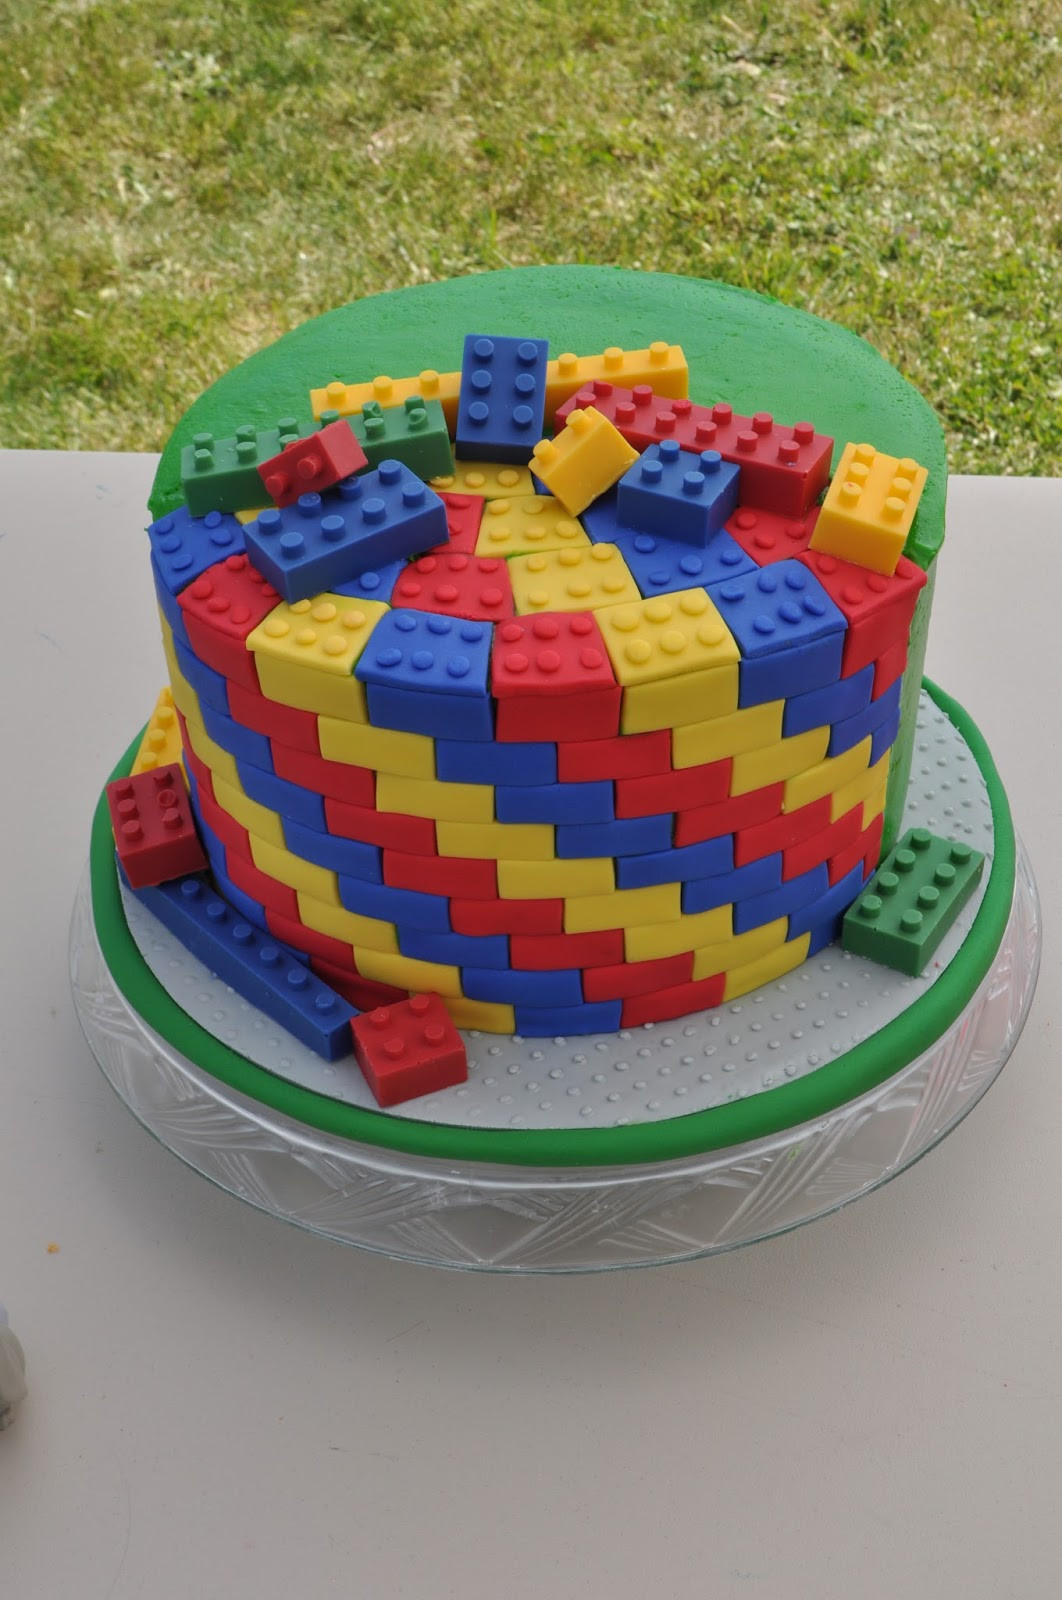 Lego Birthday Cake Fresh Peach Of Cake Lego Birthday Cake